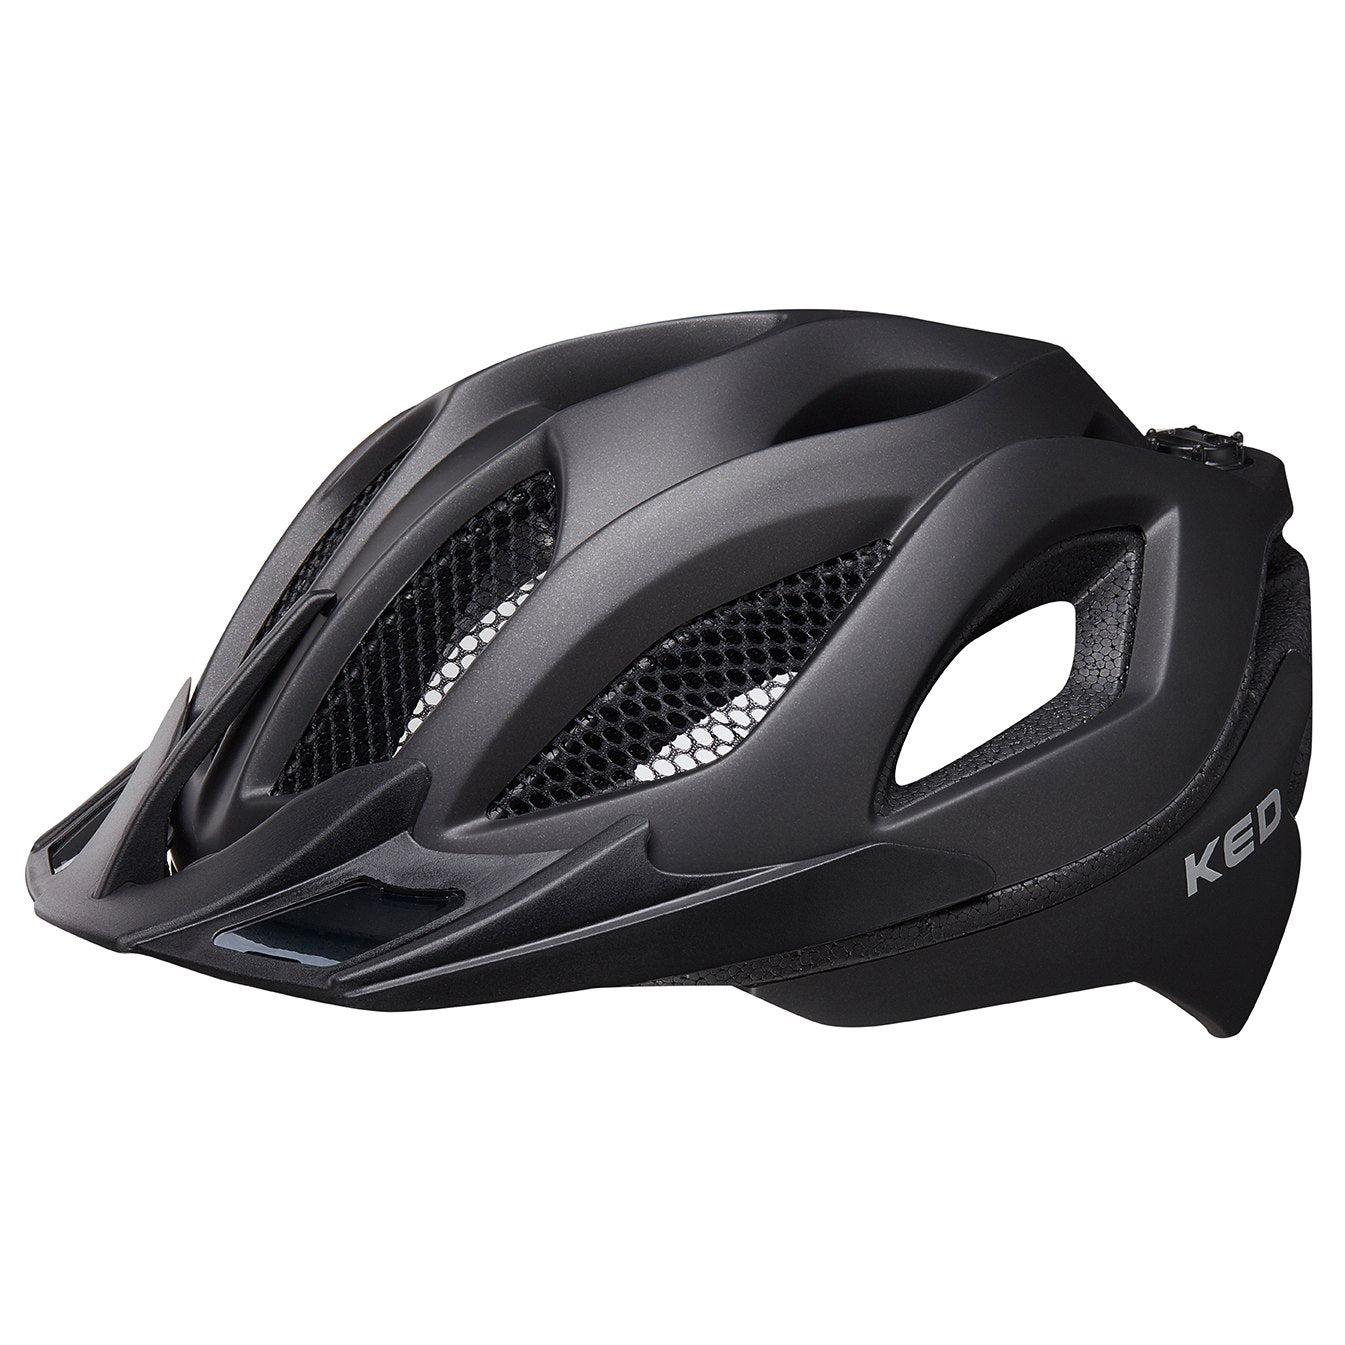 KED Spiri II MTB Cycling Helmet (Black Matt)